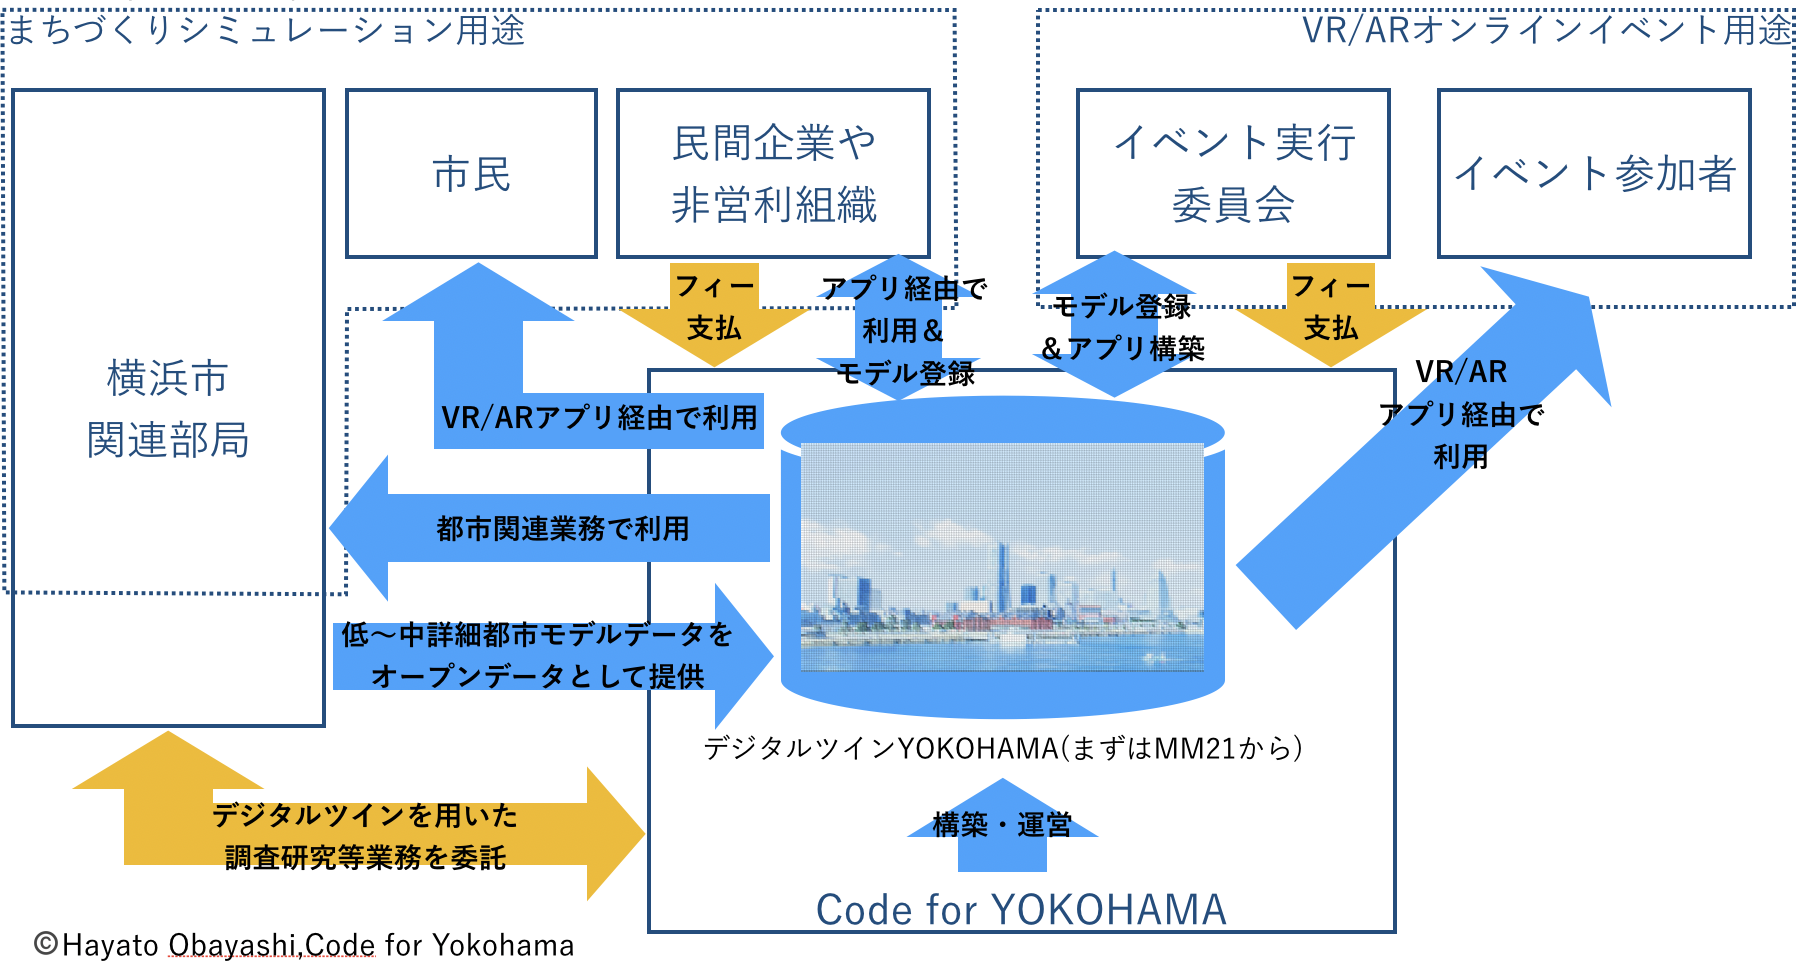 「デジタルツインYOKOHAMA」の構築と運営のイメージ図